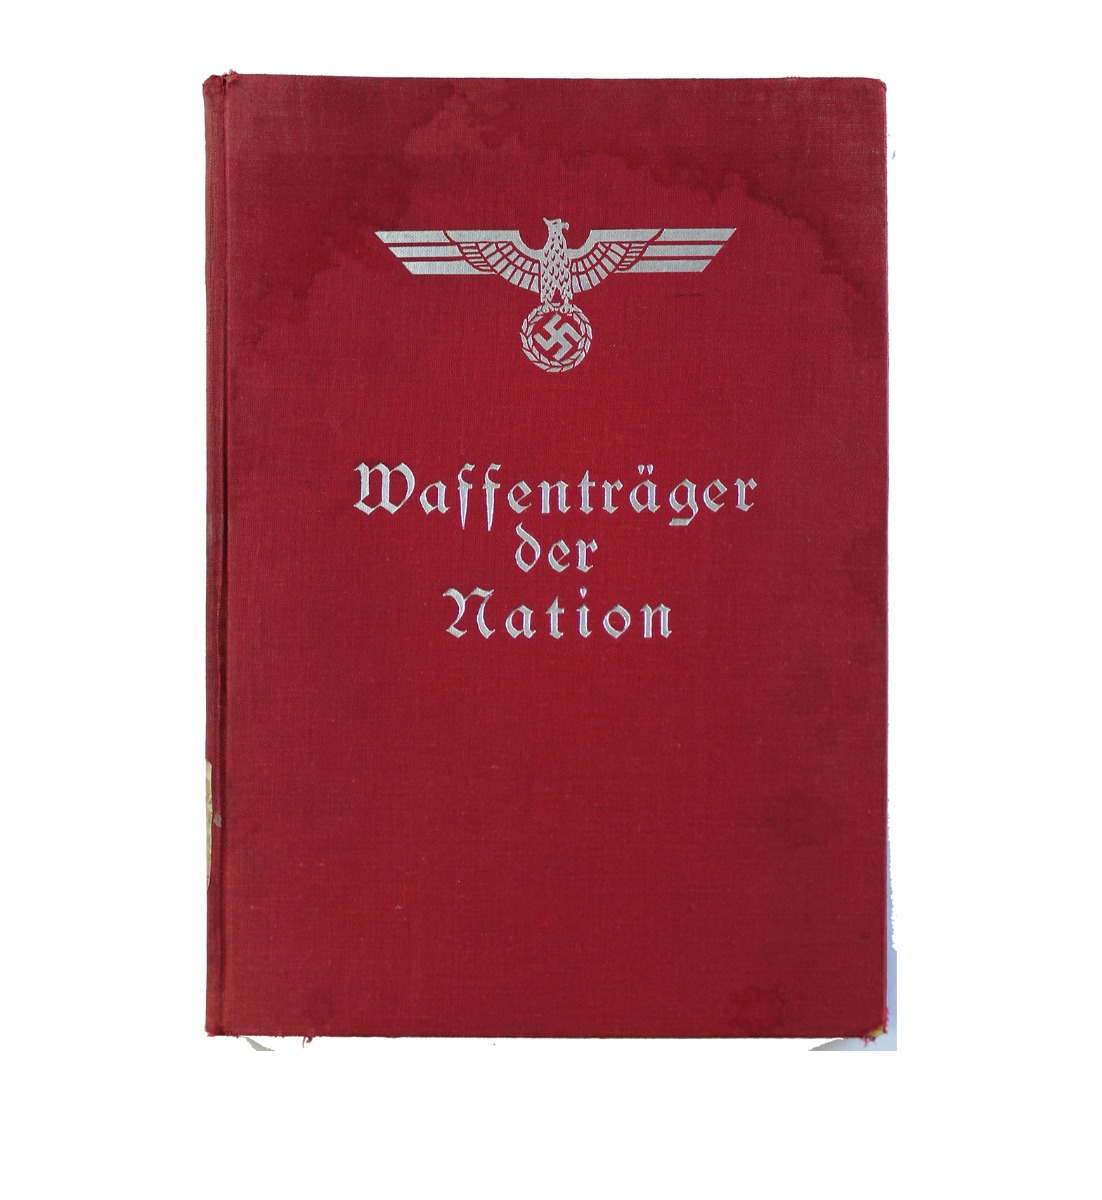 WAFFENTRAGER DER NATION BOOK 1934 HARDCOVER 